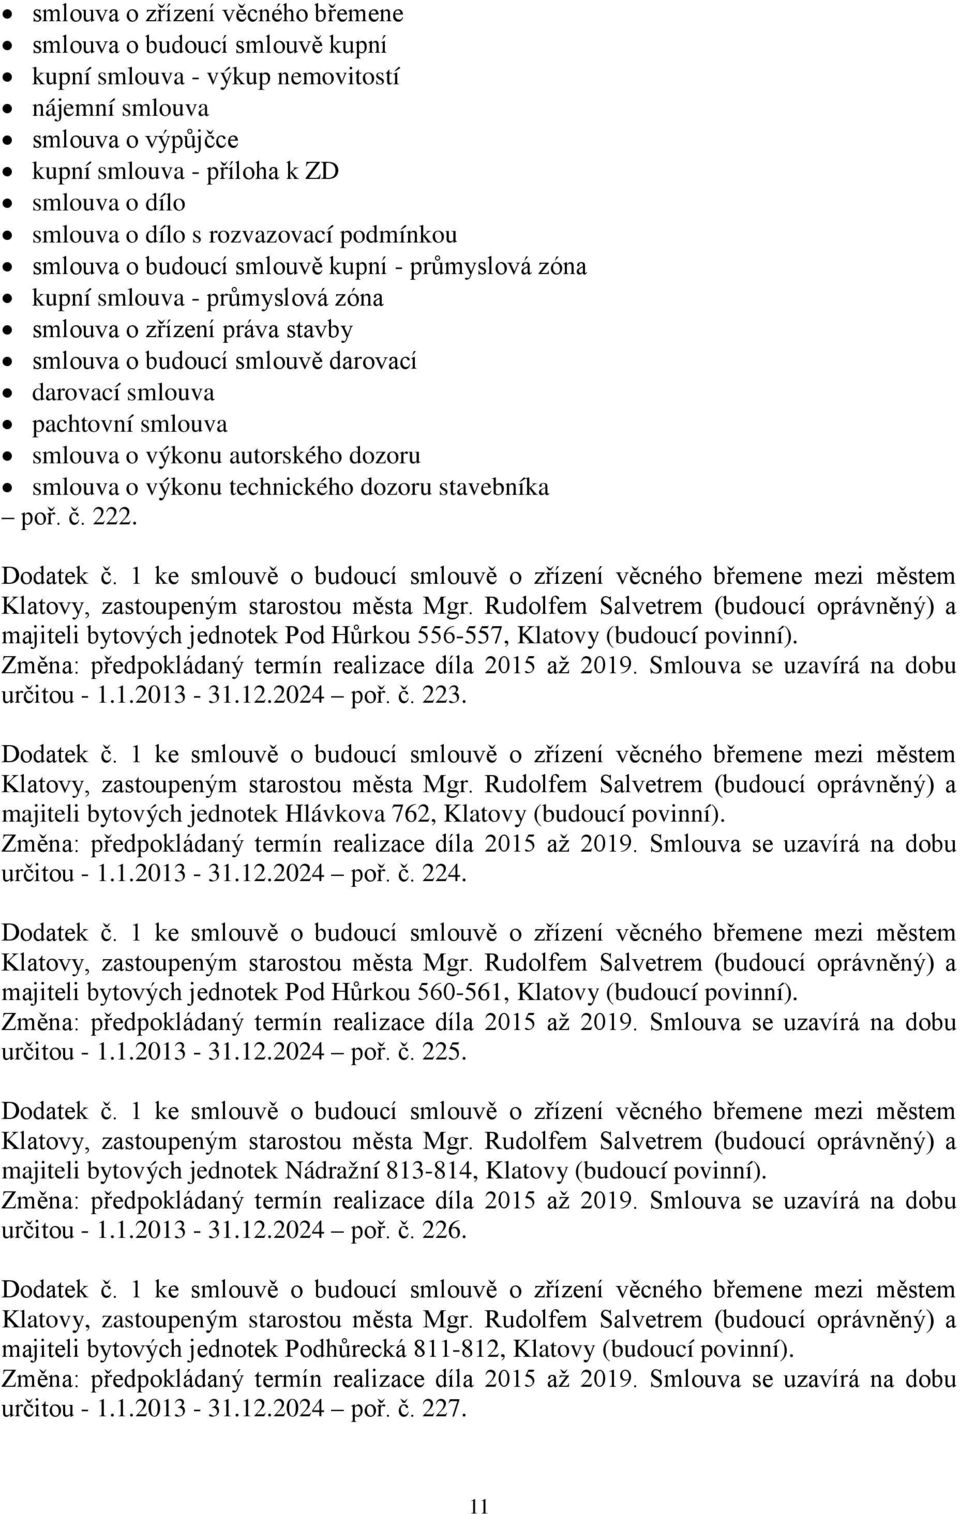 smlouva smlouva o výkonu autorského dozoru smlouva o výkonu technického dozoru stavebníka poř. č. 222. majiteli bytových jednotek Pod Hůrkou 556-557, Klatovy (budoucí povinní). určitou - 1.1.2013-31.